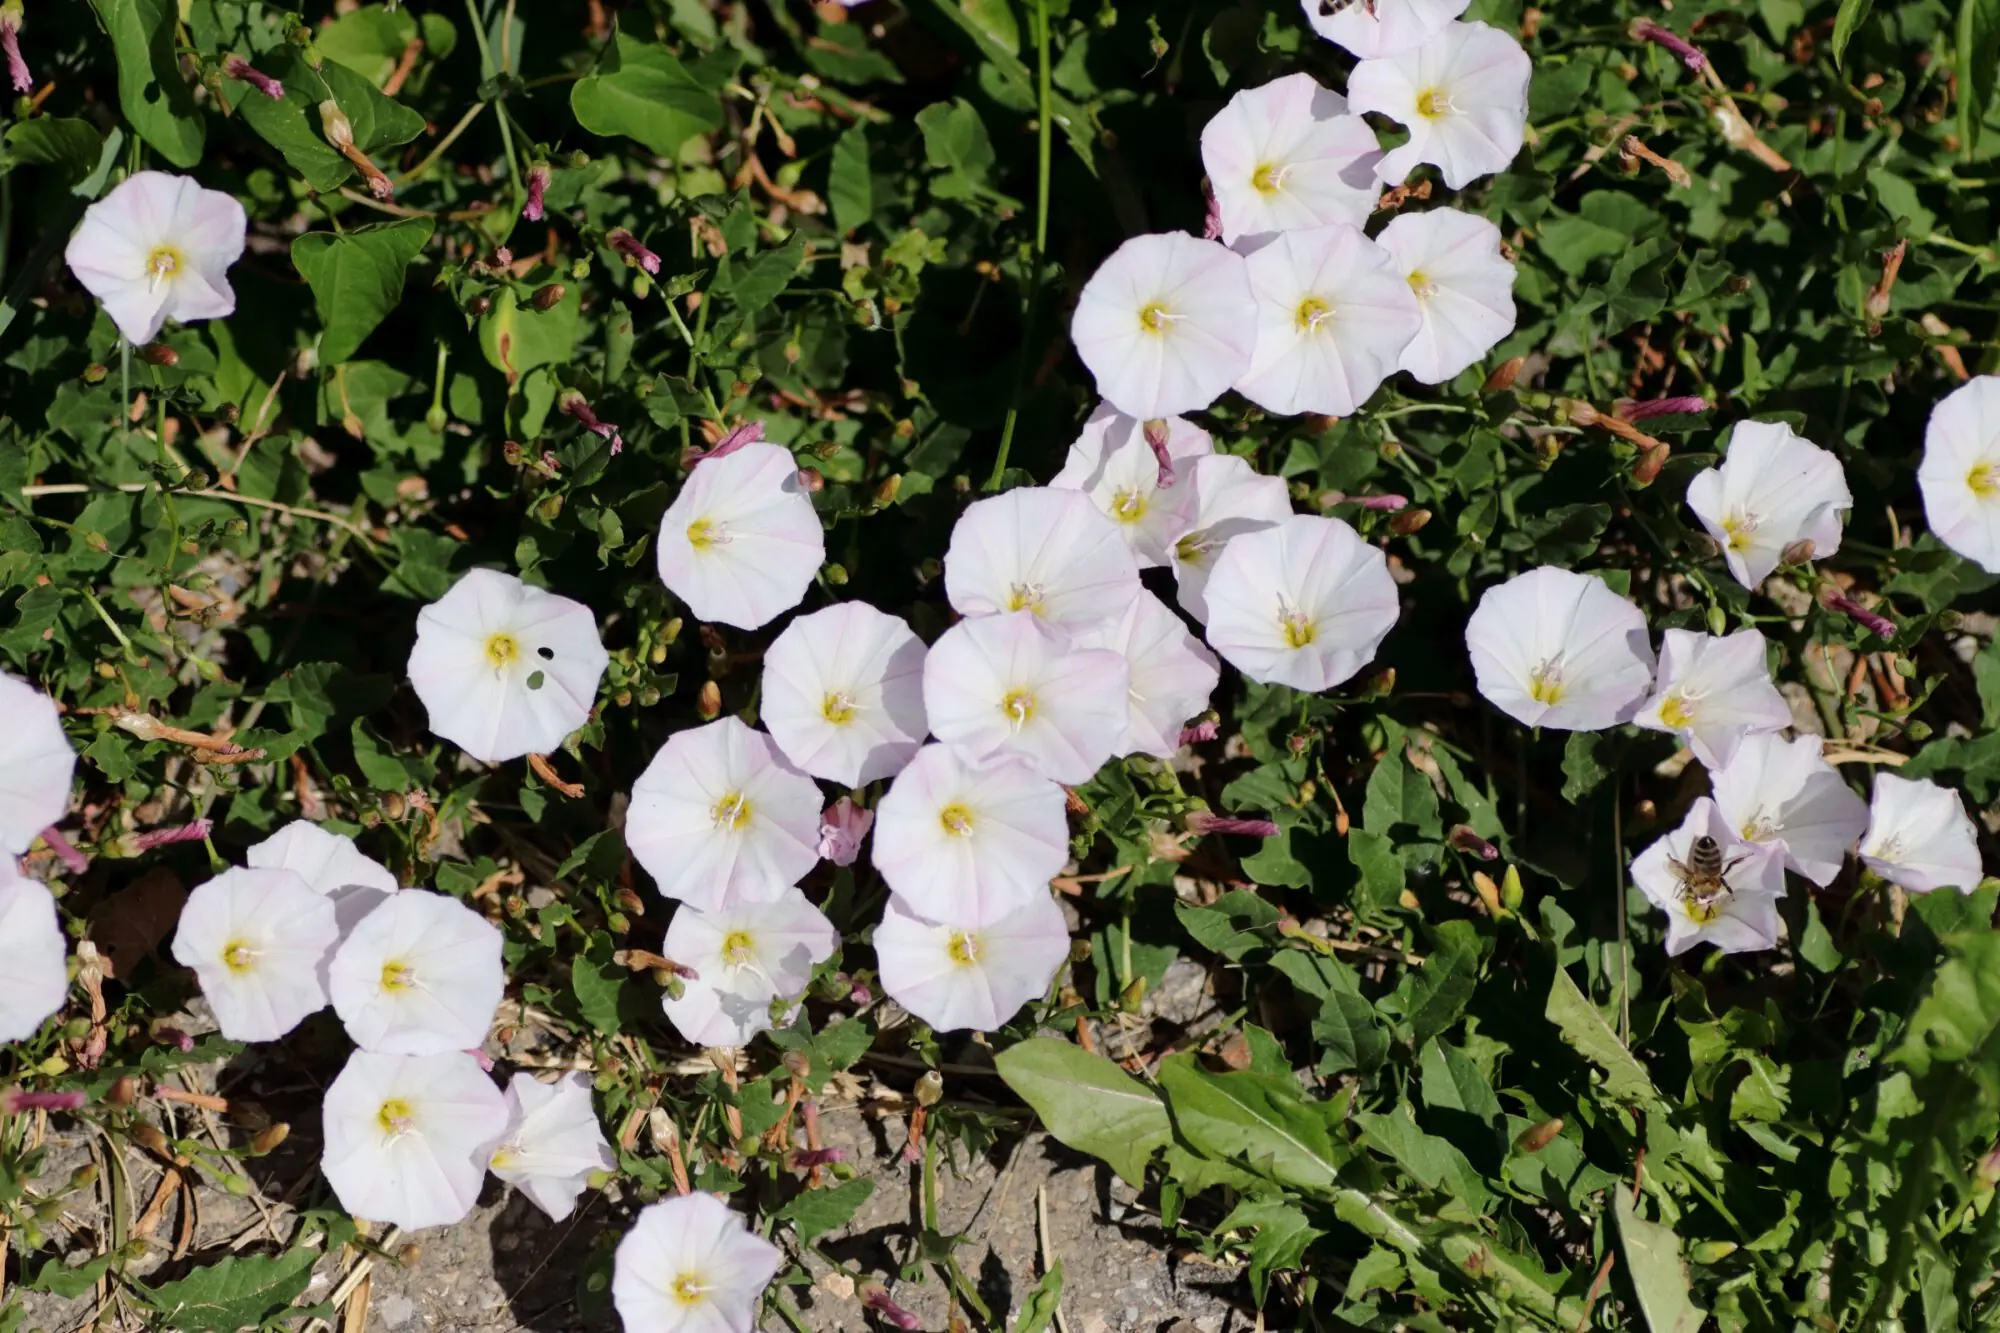 Ackerwinde - Die Pflanze wächst kriechend auf dem Boden. Die Blütenblätter sind zu einem Trichter zusammengewachsen. Die Farbe der Blüten ist weiß mit leichten rosa Streifen. In der Mitte sind die Blüten gelb-grün gefärbt. Die Blätter sind im Hintergrund unscharf fotografiert. Sie haben einen pfeilförmigen Aufbau und besitzen eine dunkelgrüne Färbung. In einer der Blüten am rechten Bildrand sammelt eine Honigbiene Pollen.